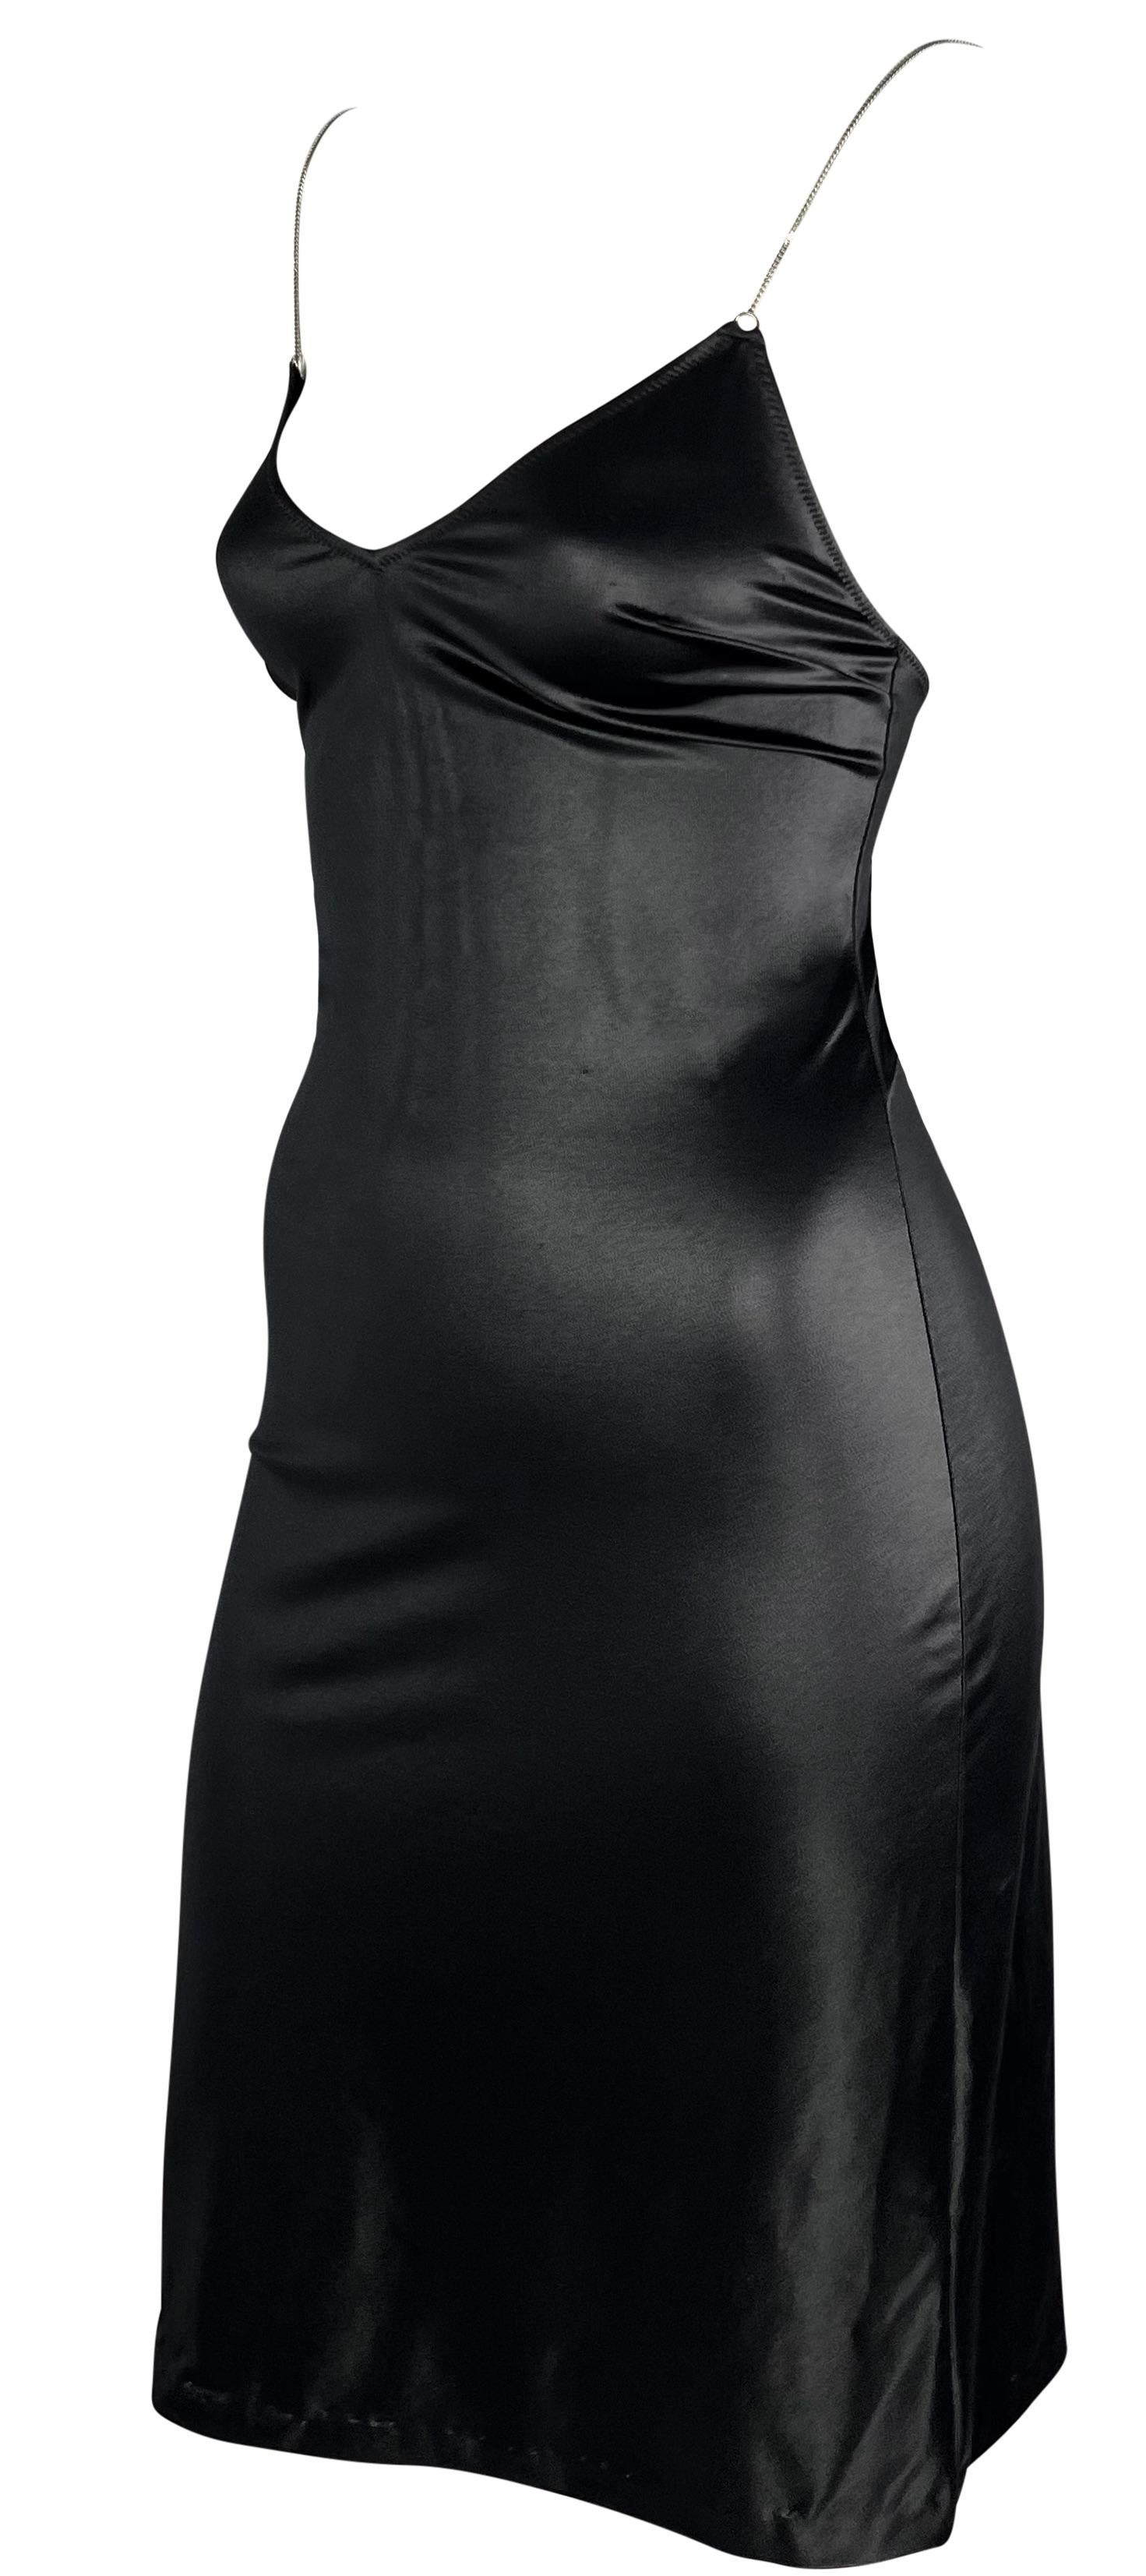 Dieses glänzende schwarze Minikleid von Dolce & Gabbana schmiegt sich perfekt an den Körper an. Dieses Kleid im Wetlook-Slip-Stil aus den 1990er Jahren hat einen tiefen Ausschnitt und einen tiefen Rücken. Das Kleid ist mit dünnen silberfarbenen